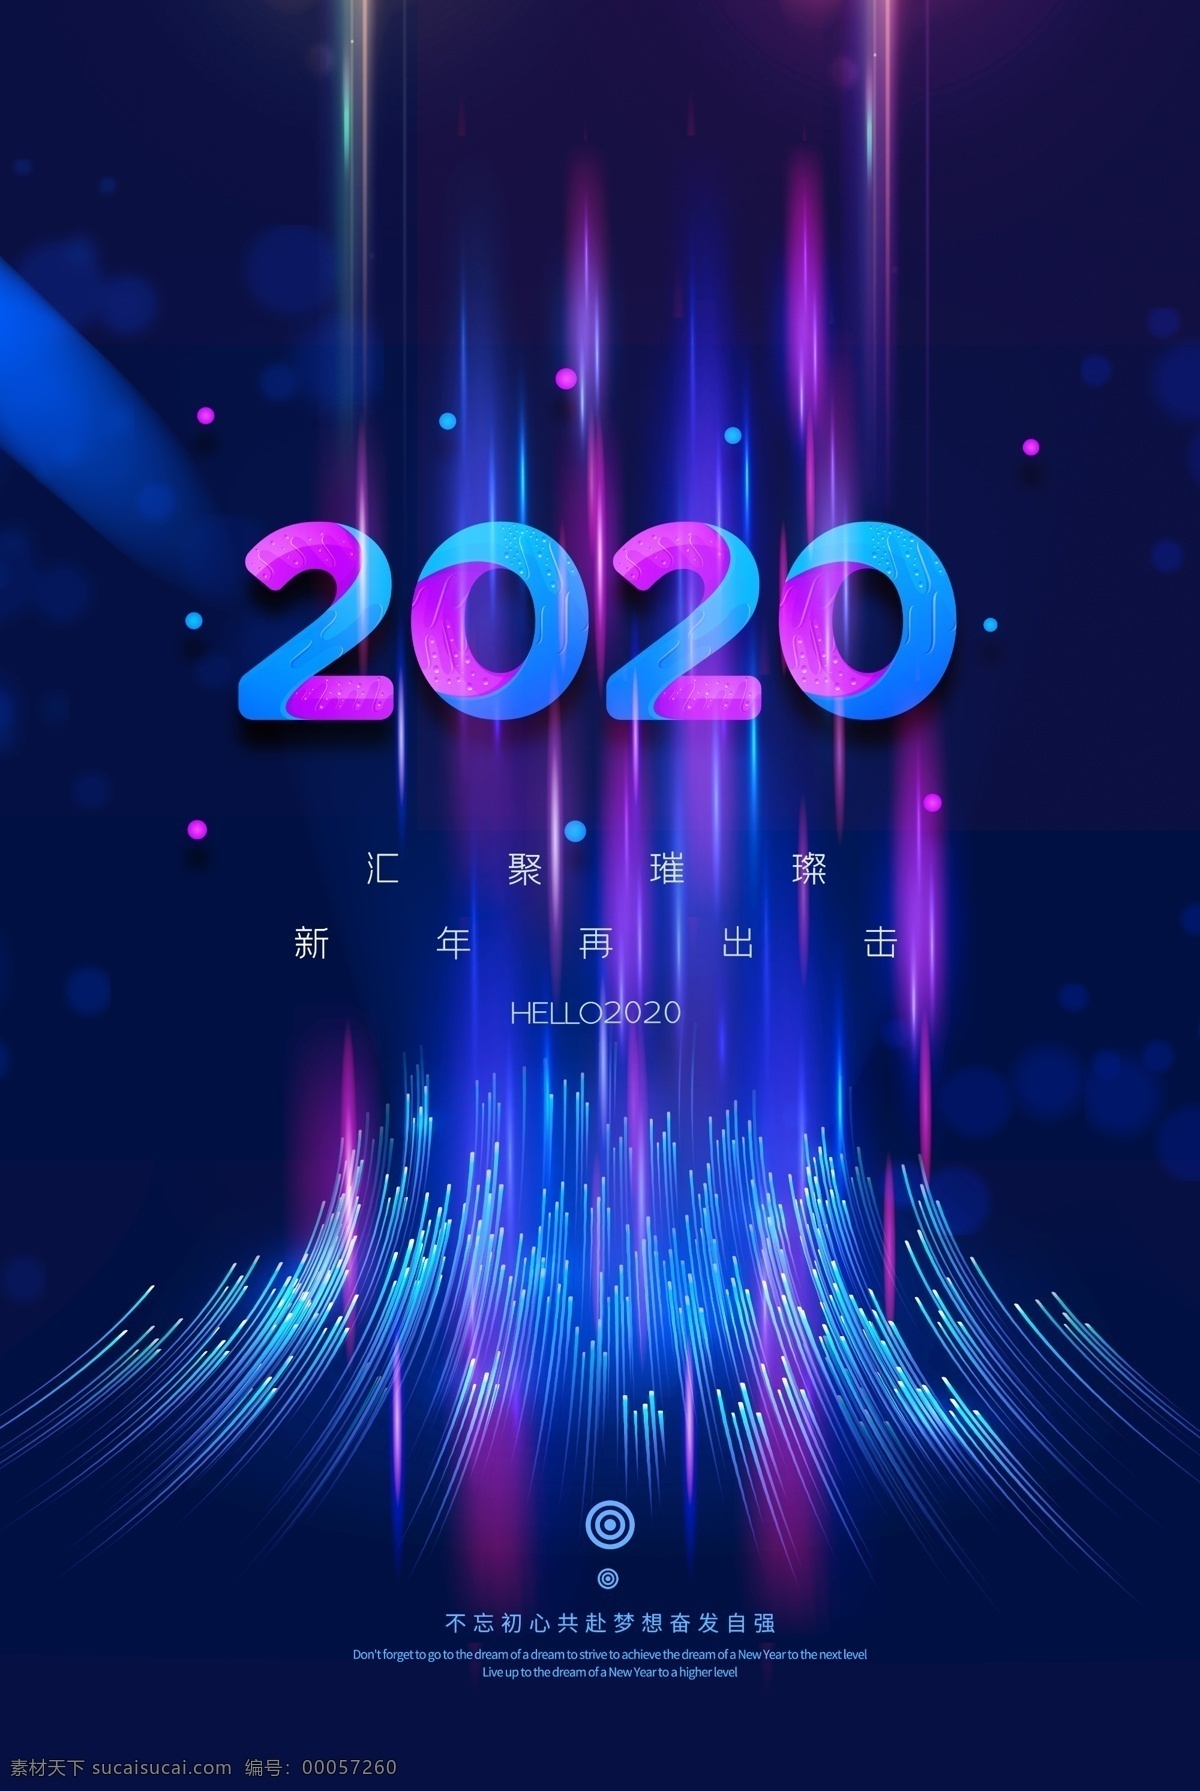 2020 科技感 科技 创新图片 创新 未来 炫酷 企业 公司海报